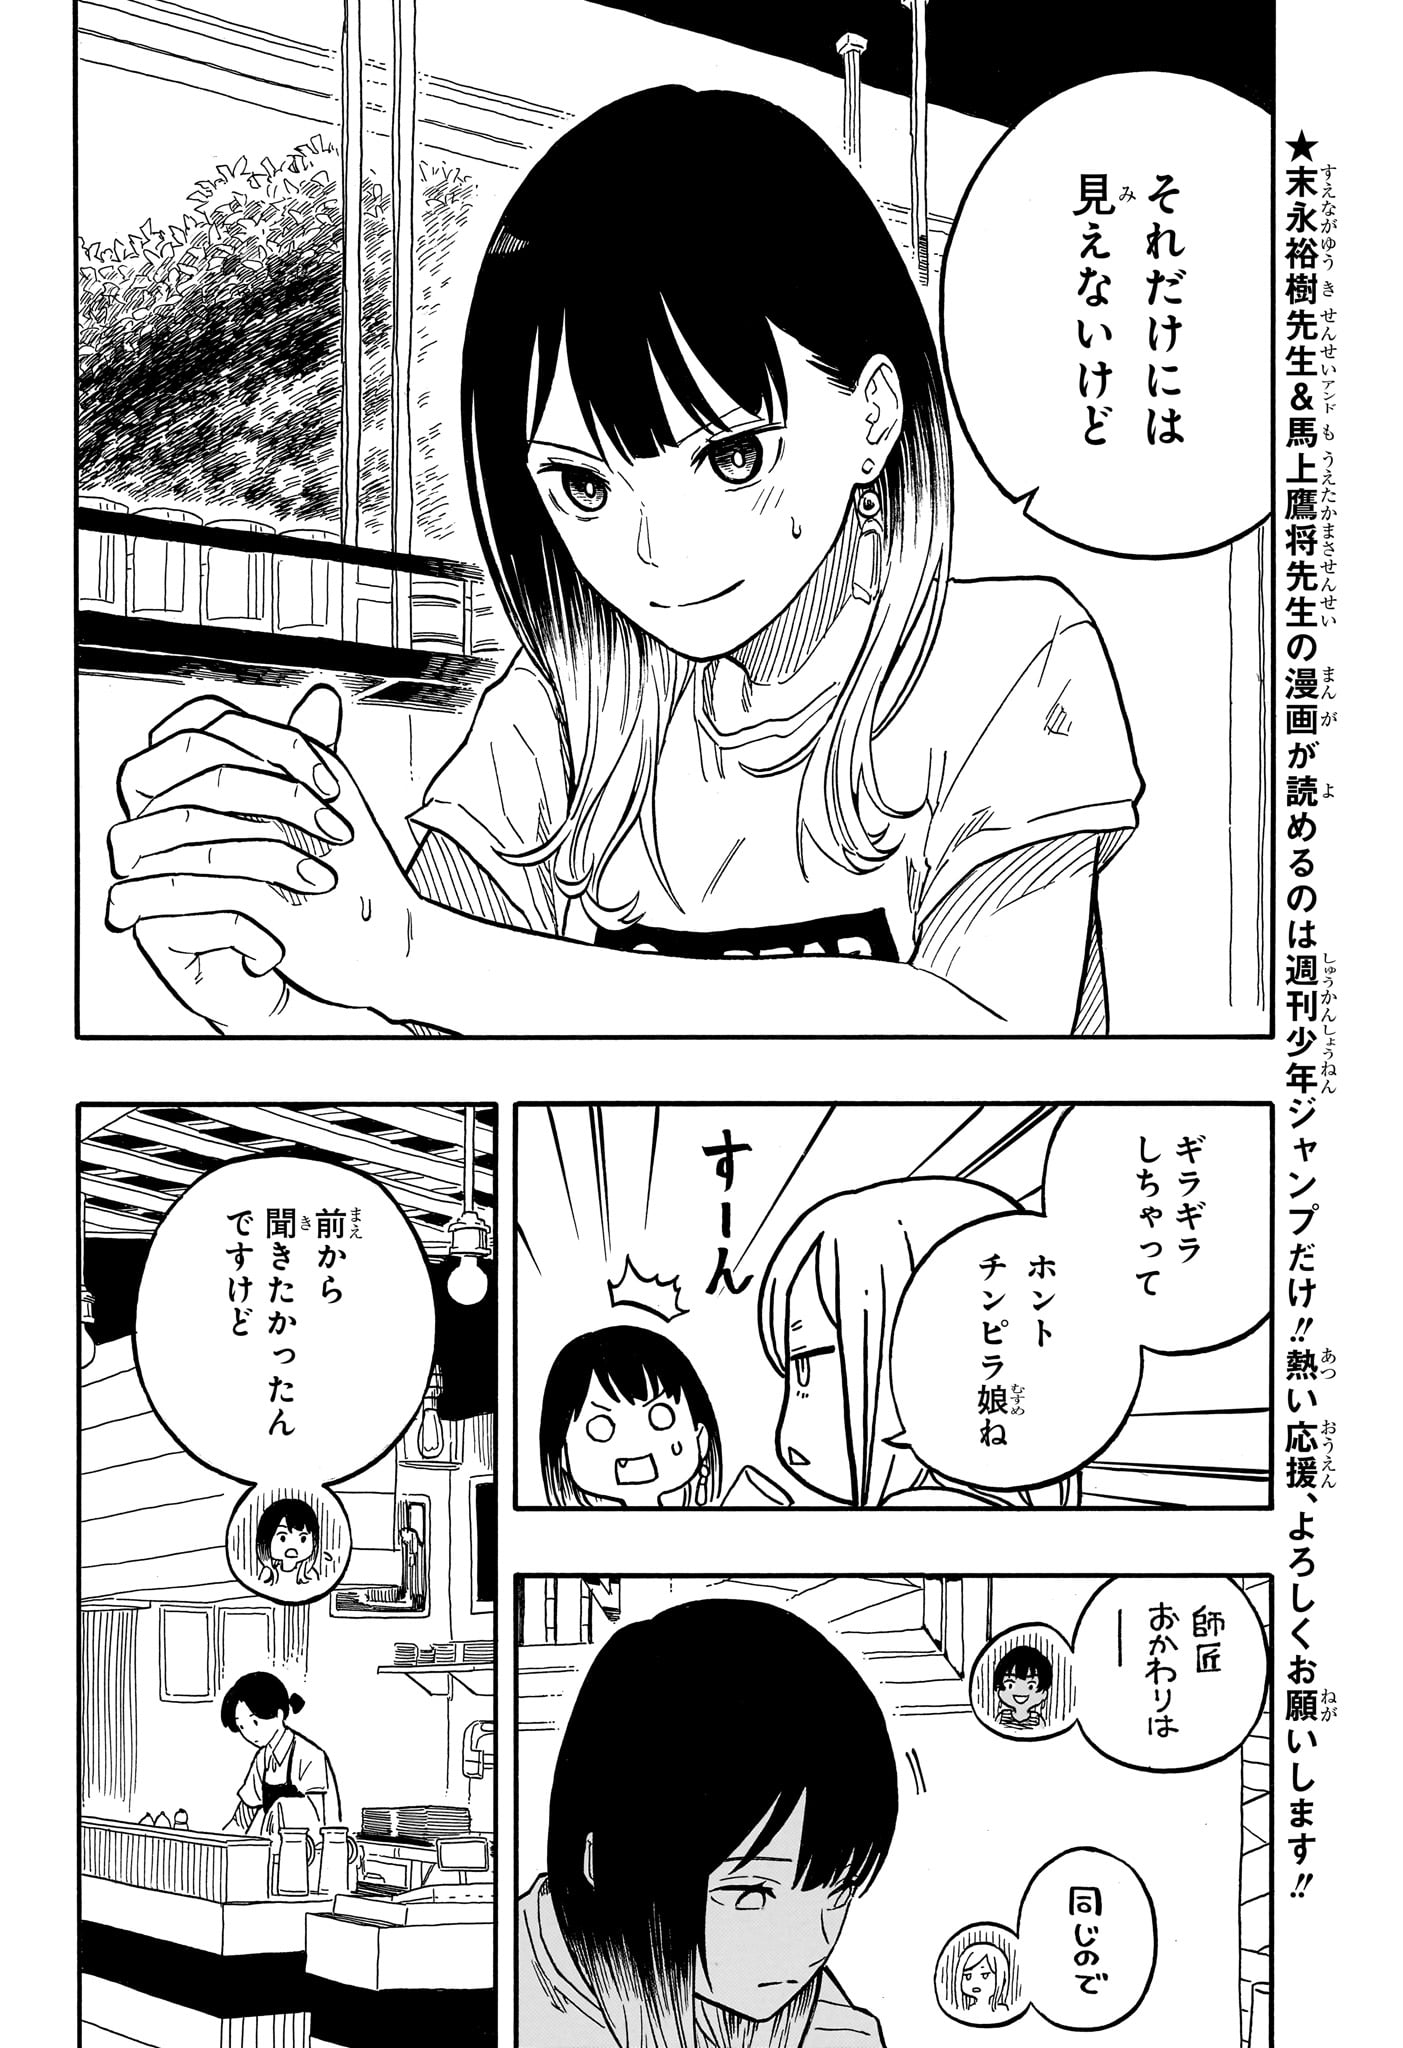 Akane-Banashi - Chapter 119 - Page 4